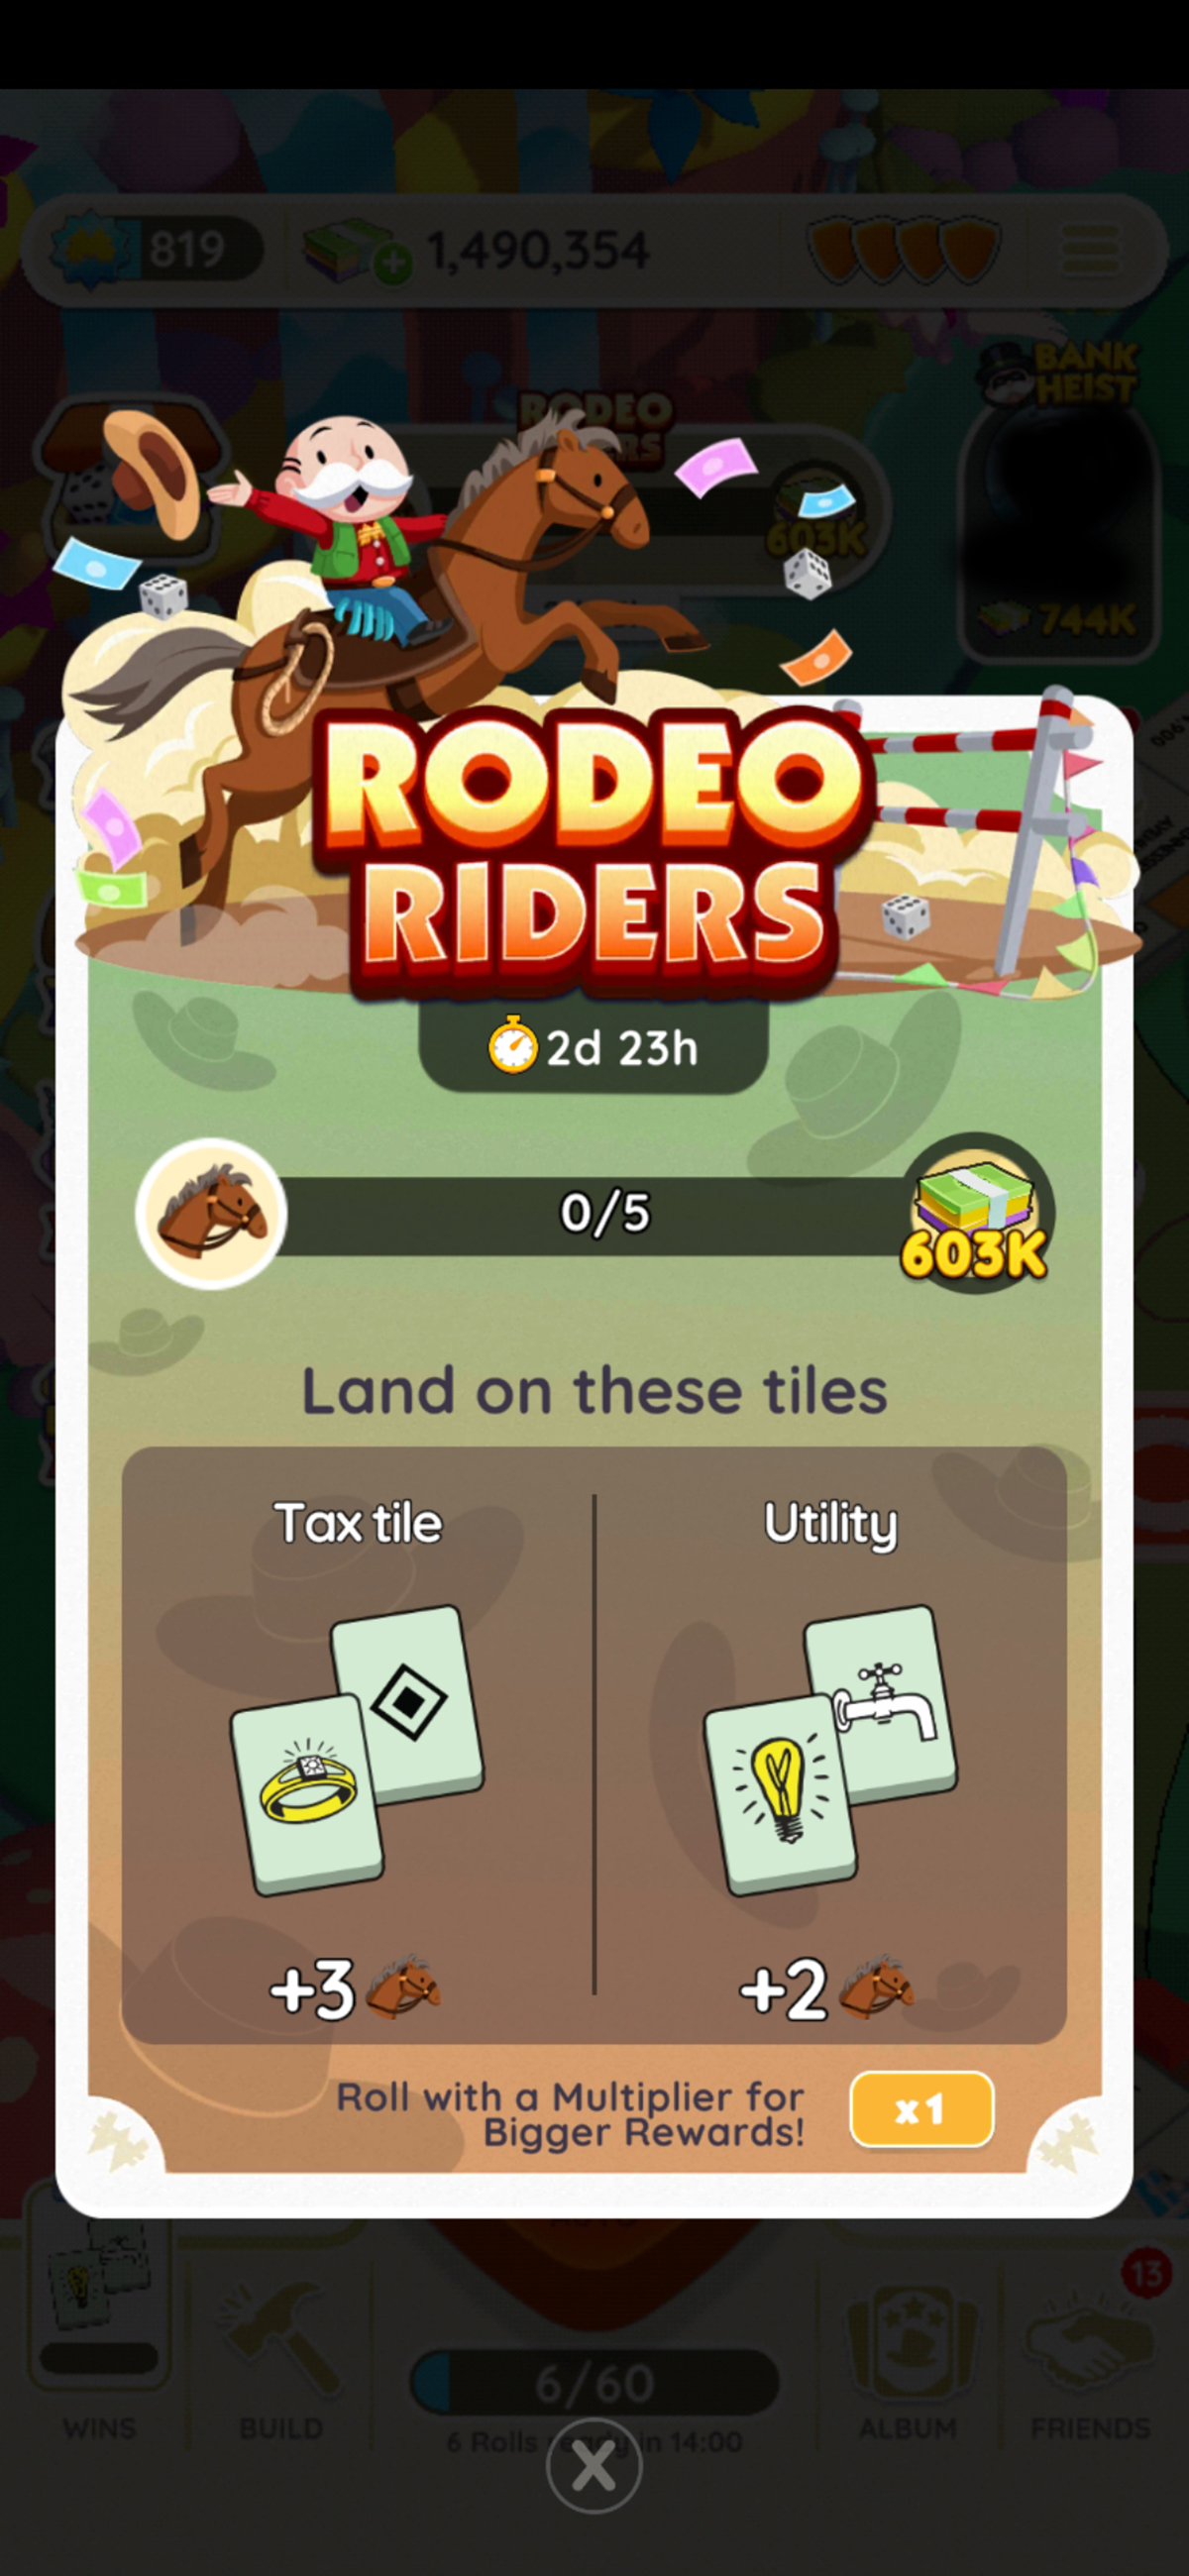 Instructions pour l'événement Rodeo Riders dans Monopoly GO dans le cadre d'un guide sur toutes les récompenses, son fonctionnement et comment y gagner.